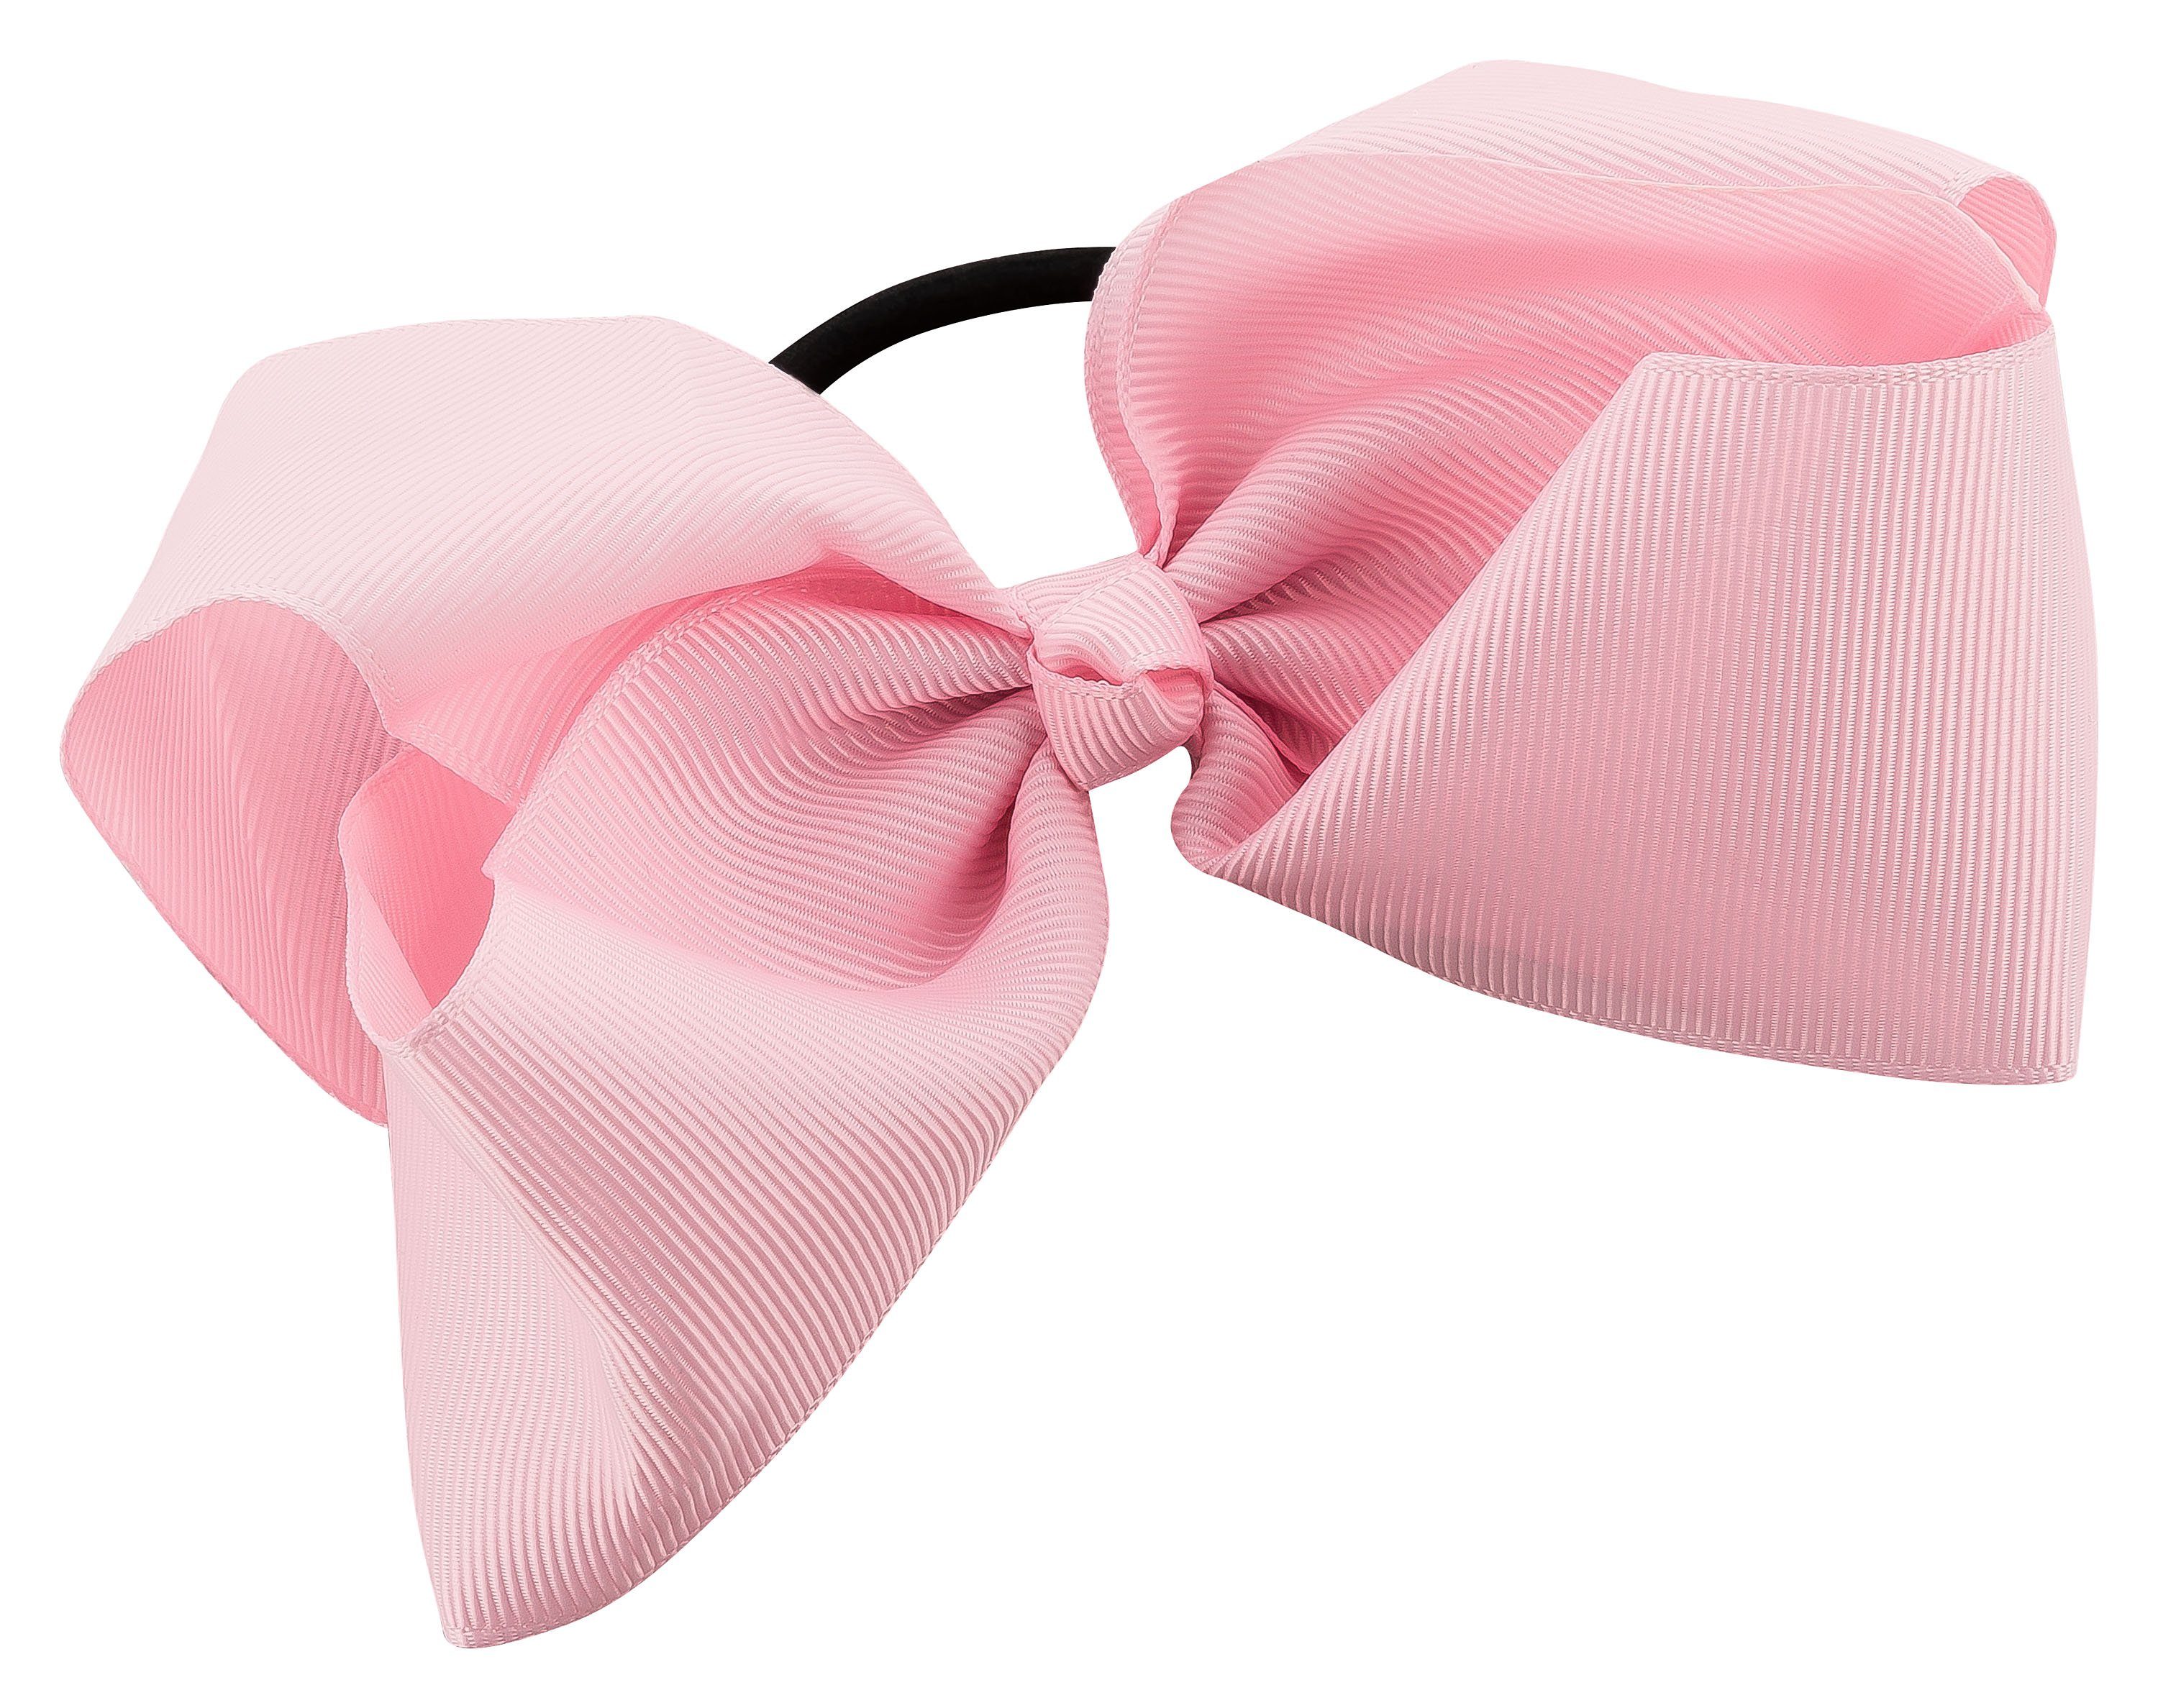 Schleife, Zopf oder tanzmuster Haargummi großer für mit Haargummi Dutt rosa